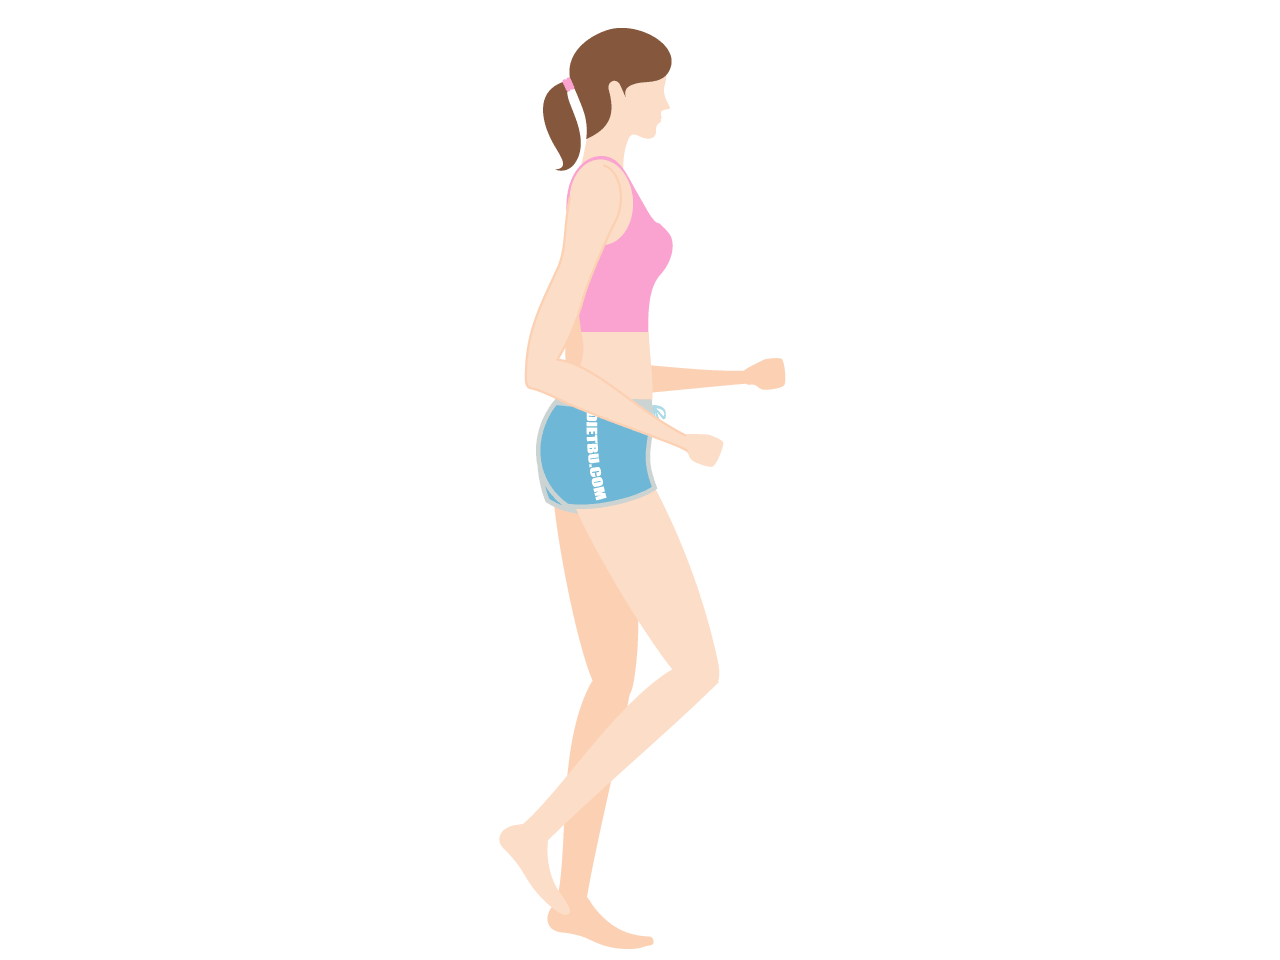 脂肪燃焼と脚やせのダイエット運動「その場ジョギング」のやり方